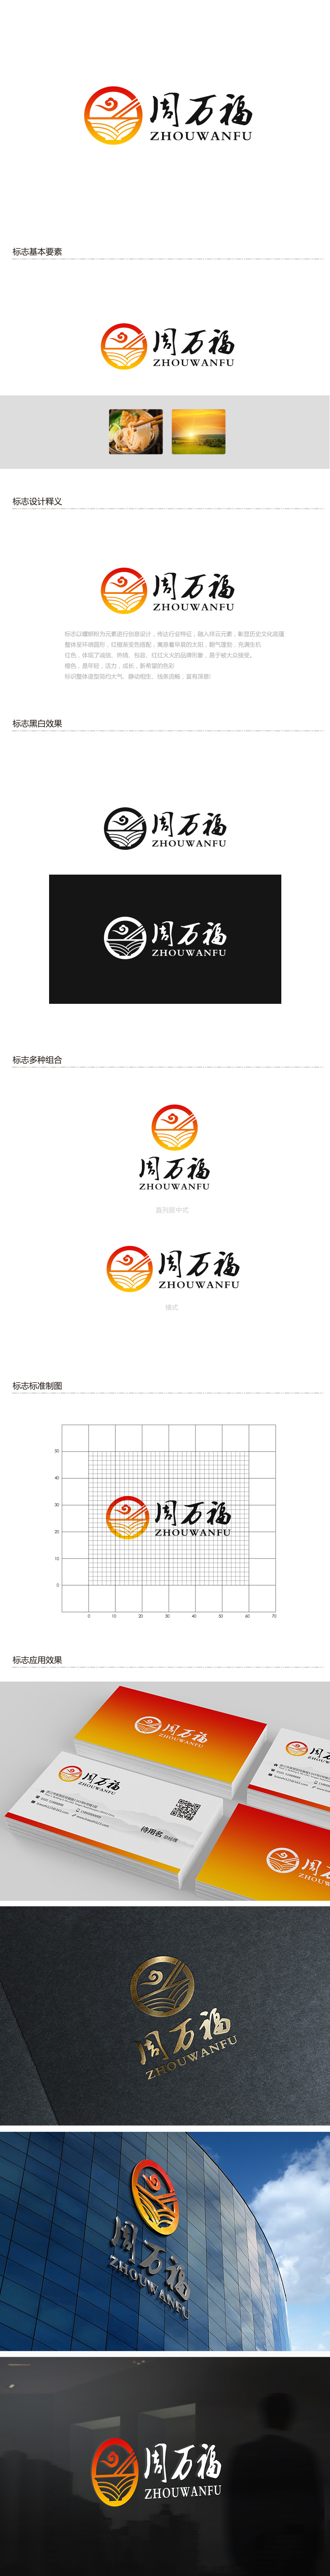 吴晓伟的周万福logo设计